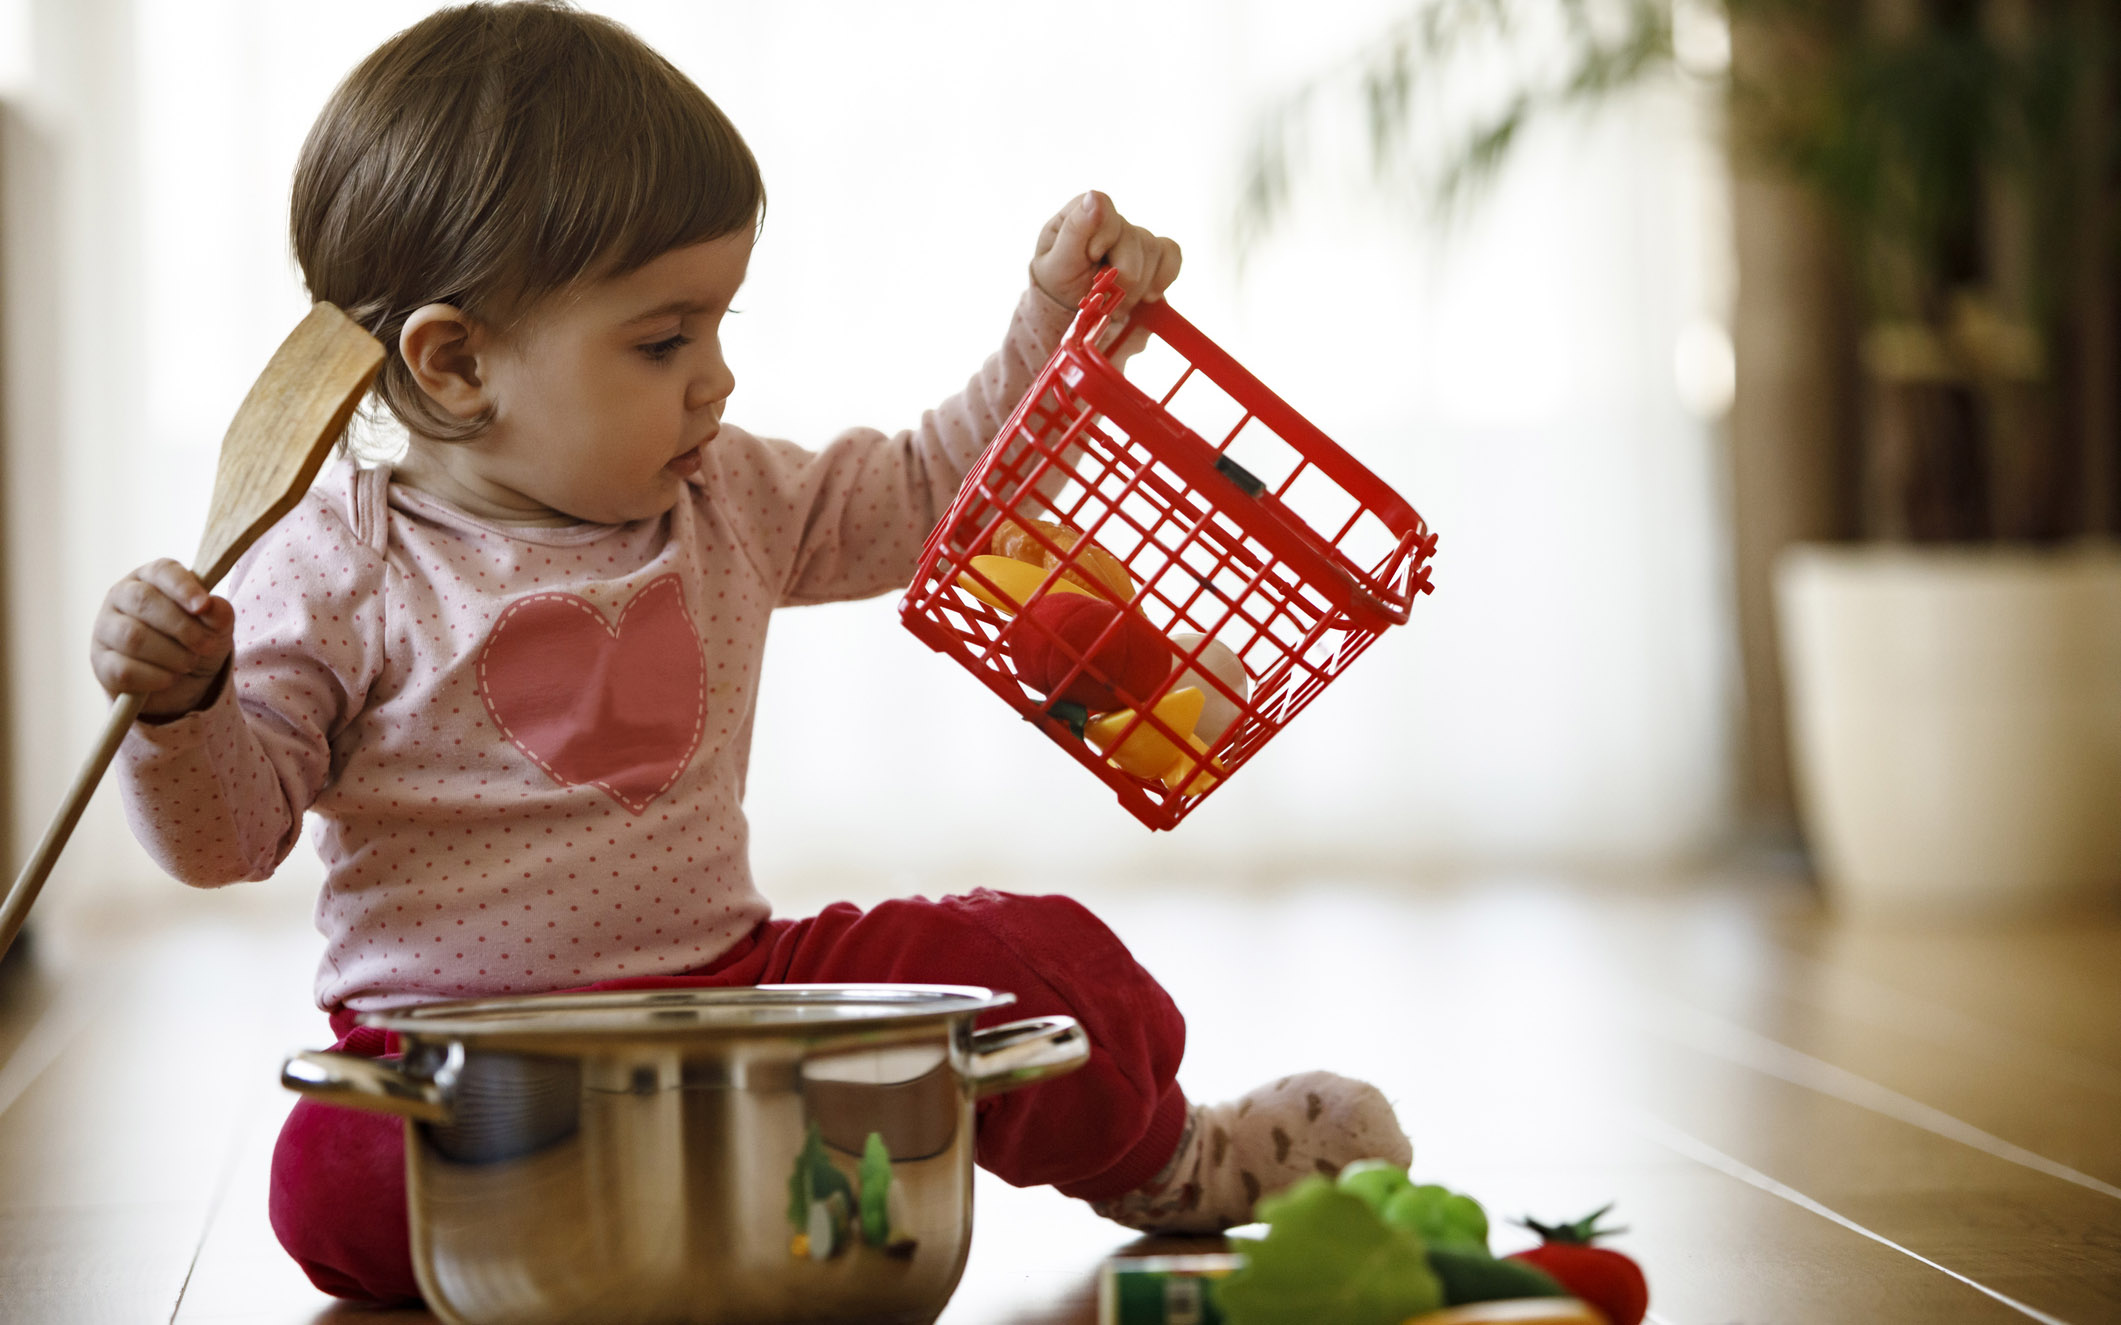 Yksivuotiaat tykkäävät leikkiä usein kaikenlaisilla keittiövälineillä.